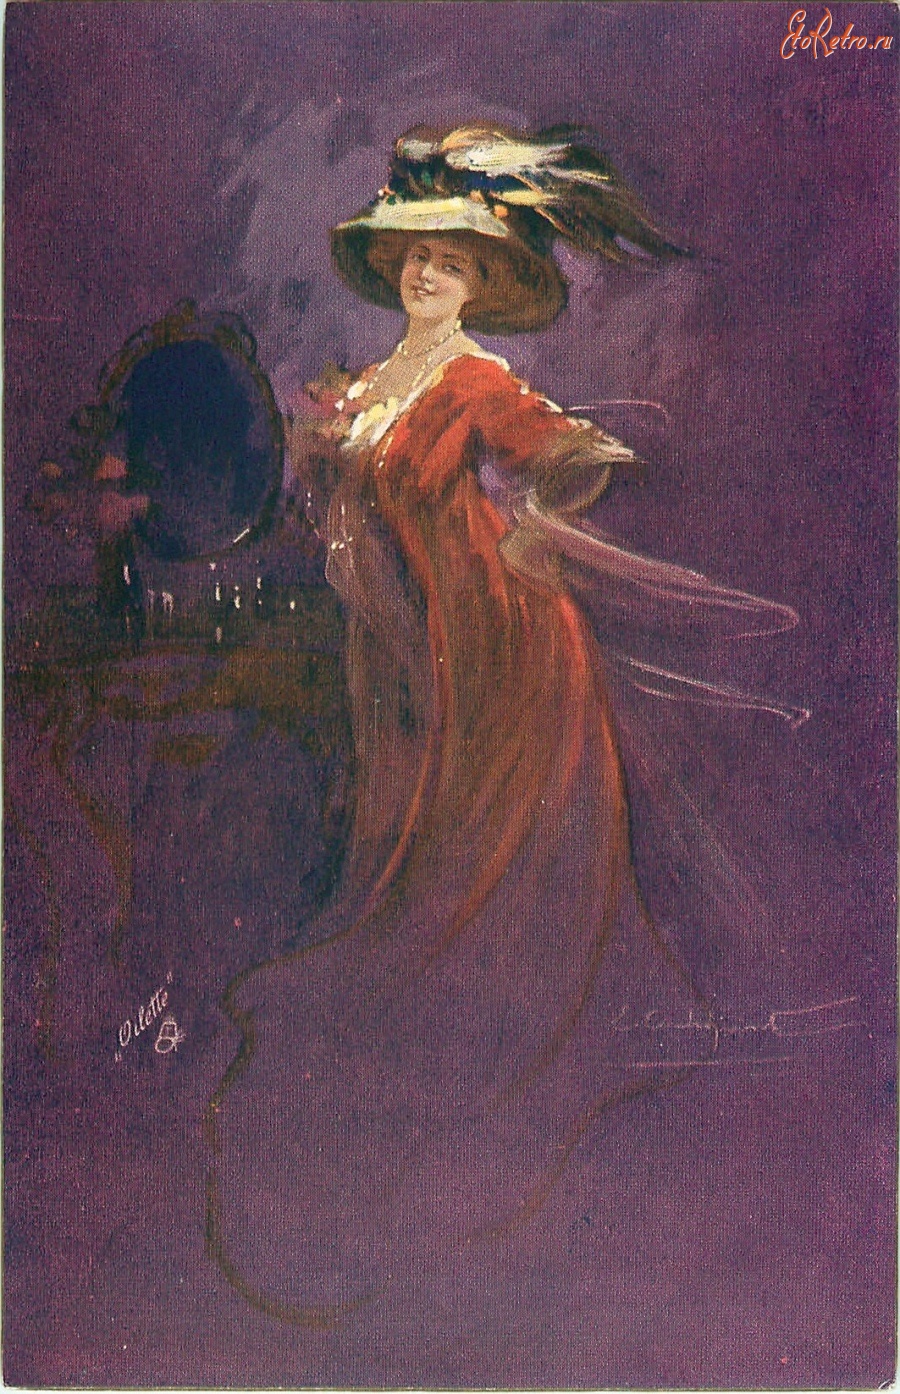 Ретро открытки - Леди в красном платье и шляпе перед зеркалом